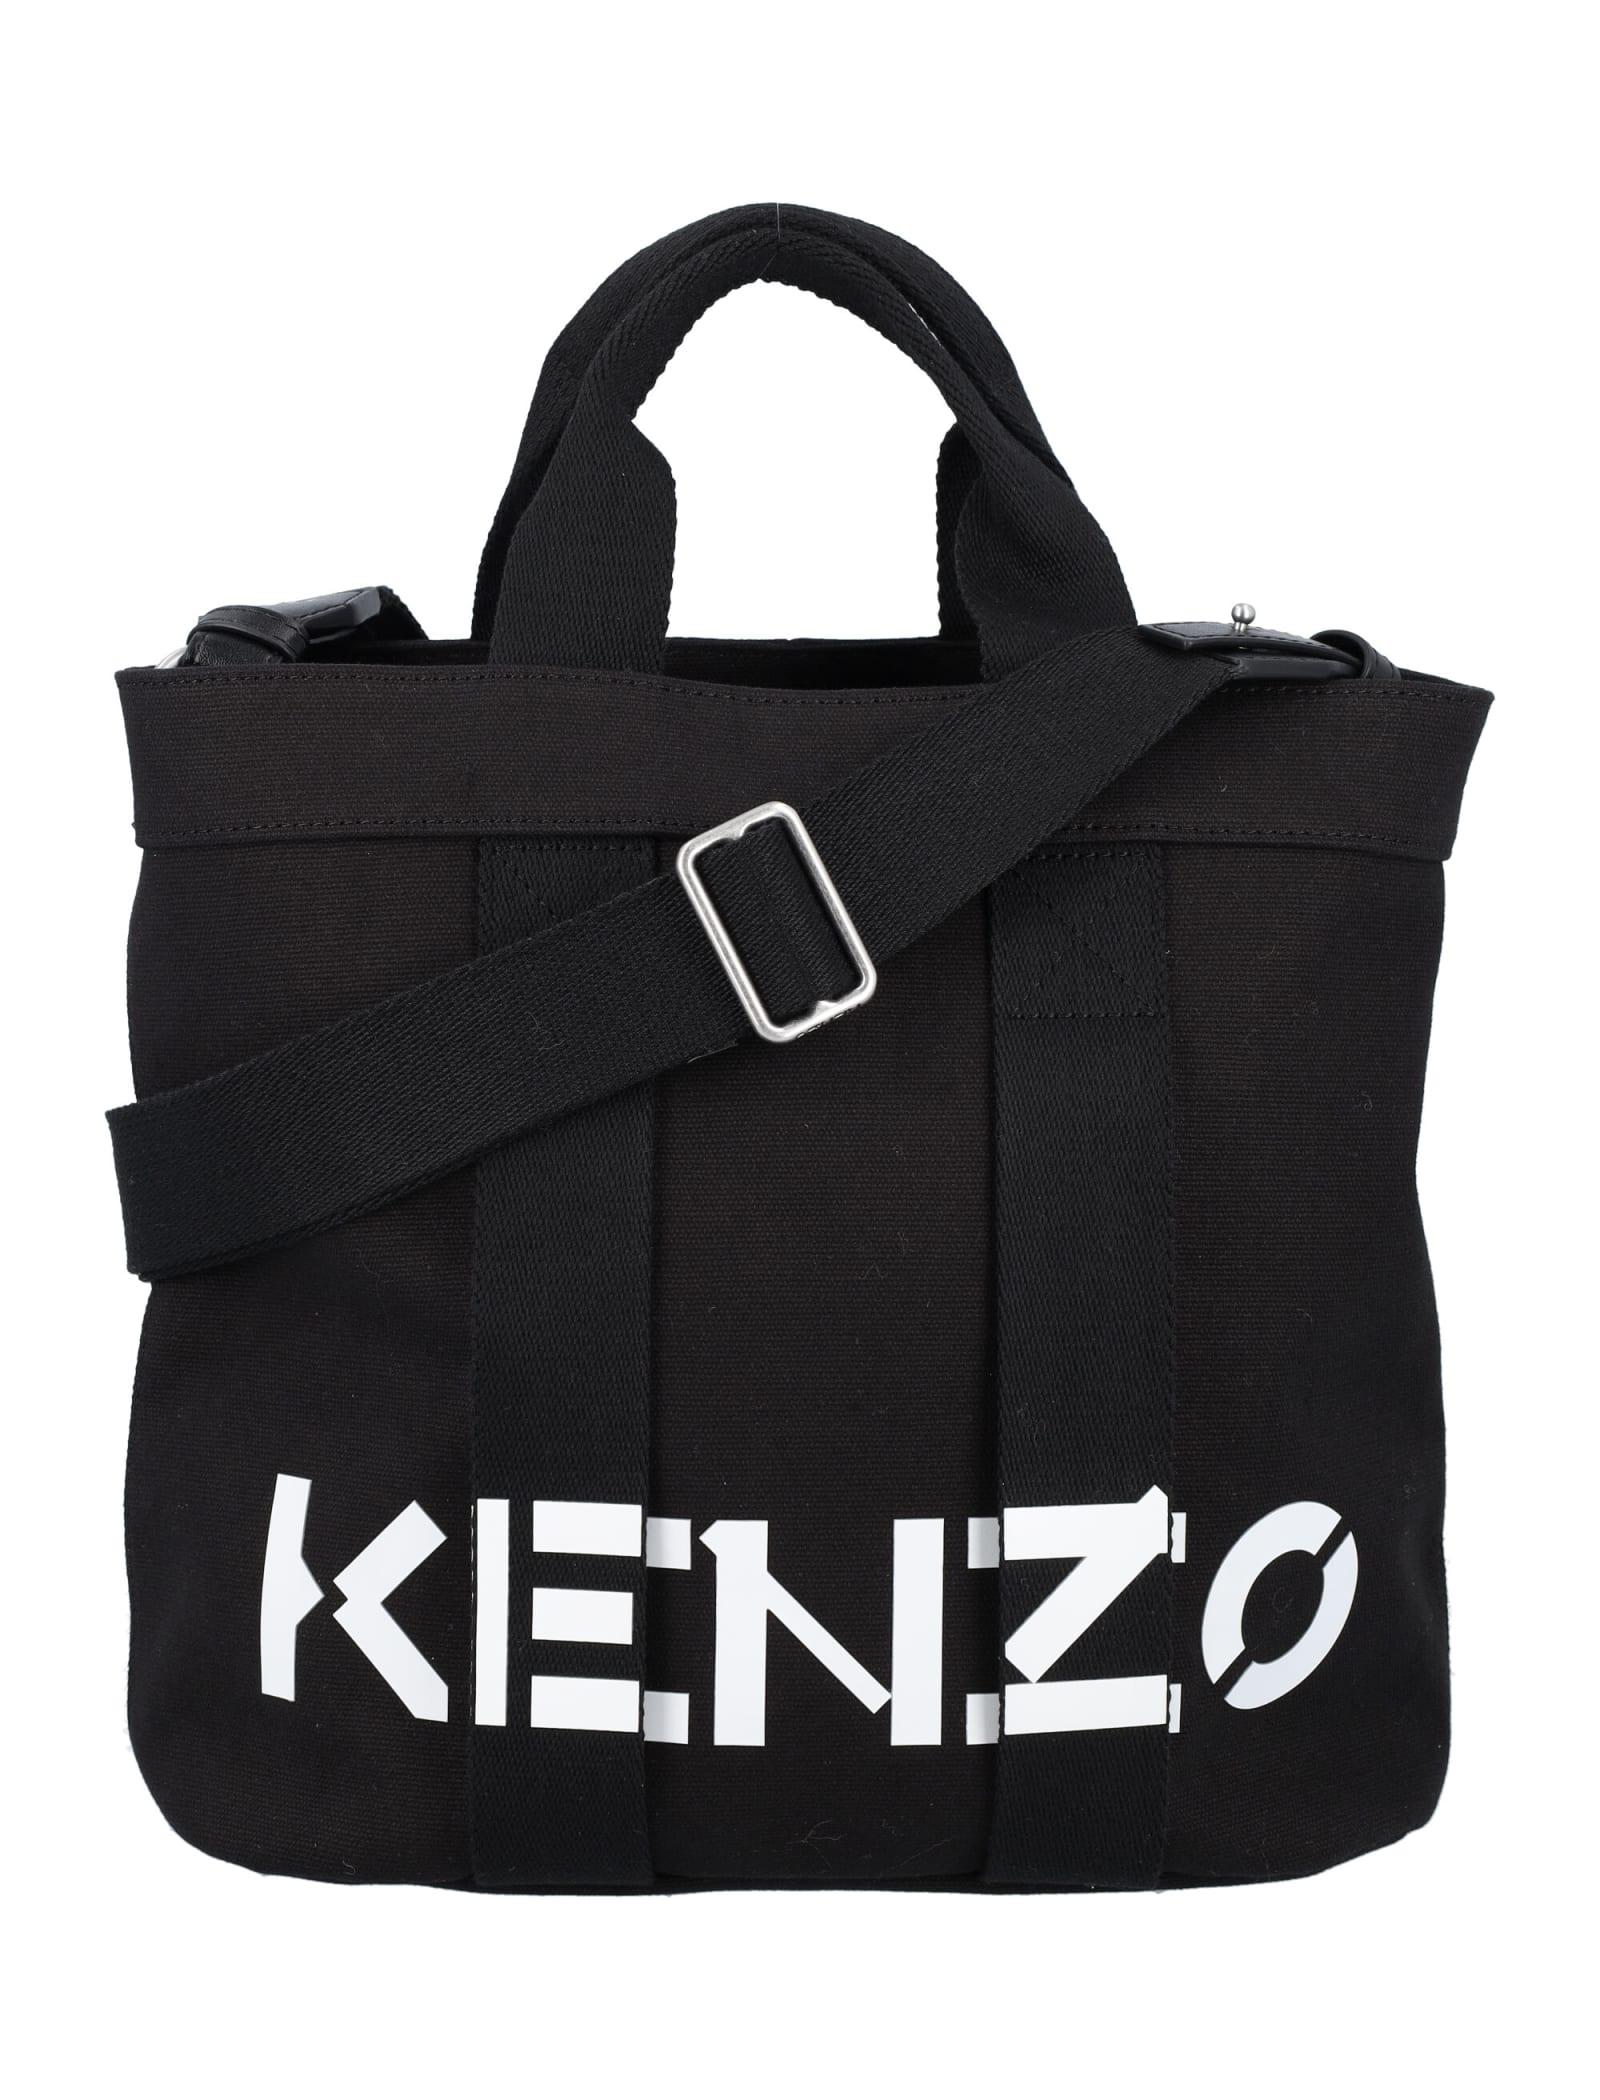 KENZO Small Tote Bag in Black for Men